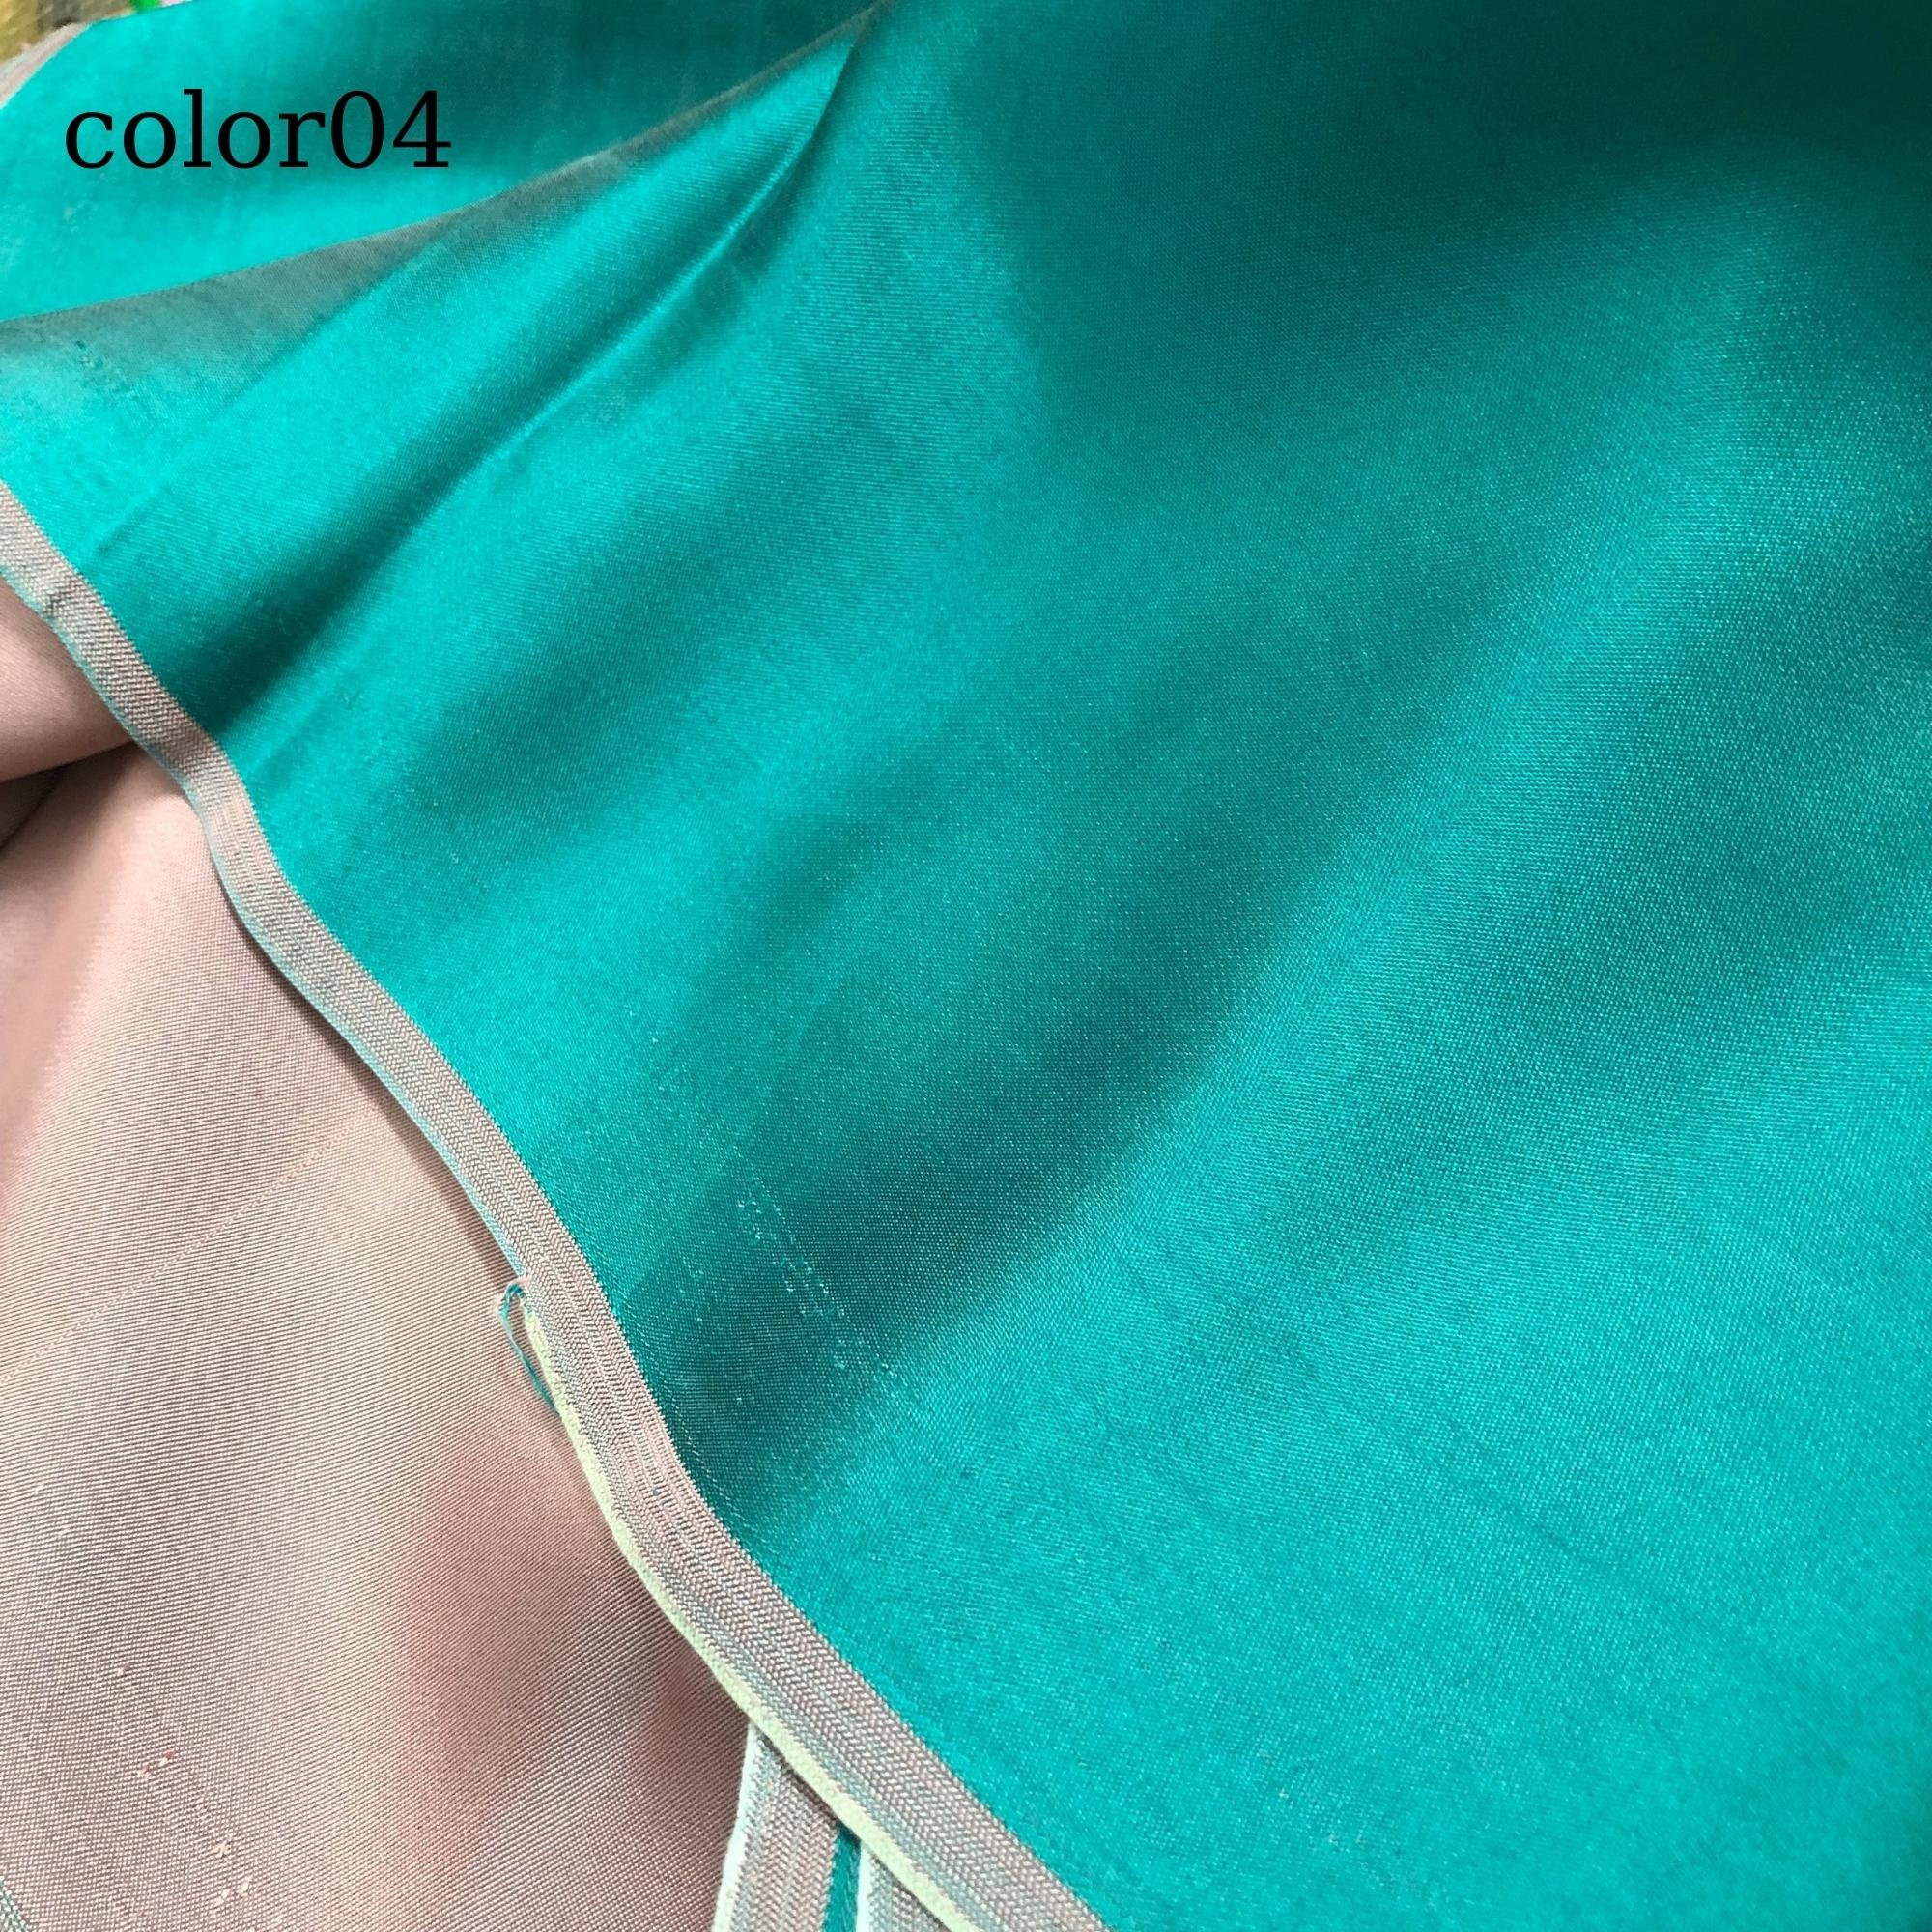 Vải Lụa Tơ Tằm Palacesik satin màu xanh lá 2 may áo dài #mềm#mượt#nhẹ#thoáng, dệt thủ công, khổ rộng 90cm